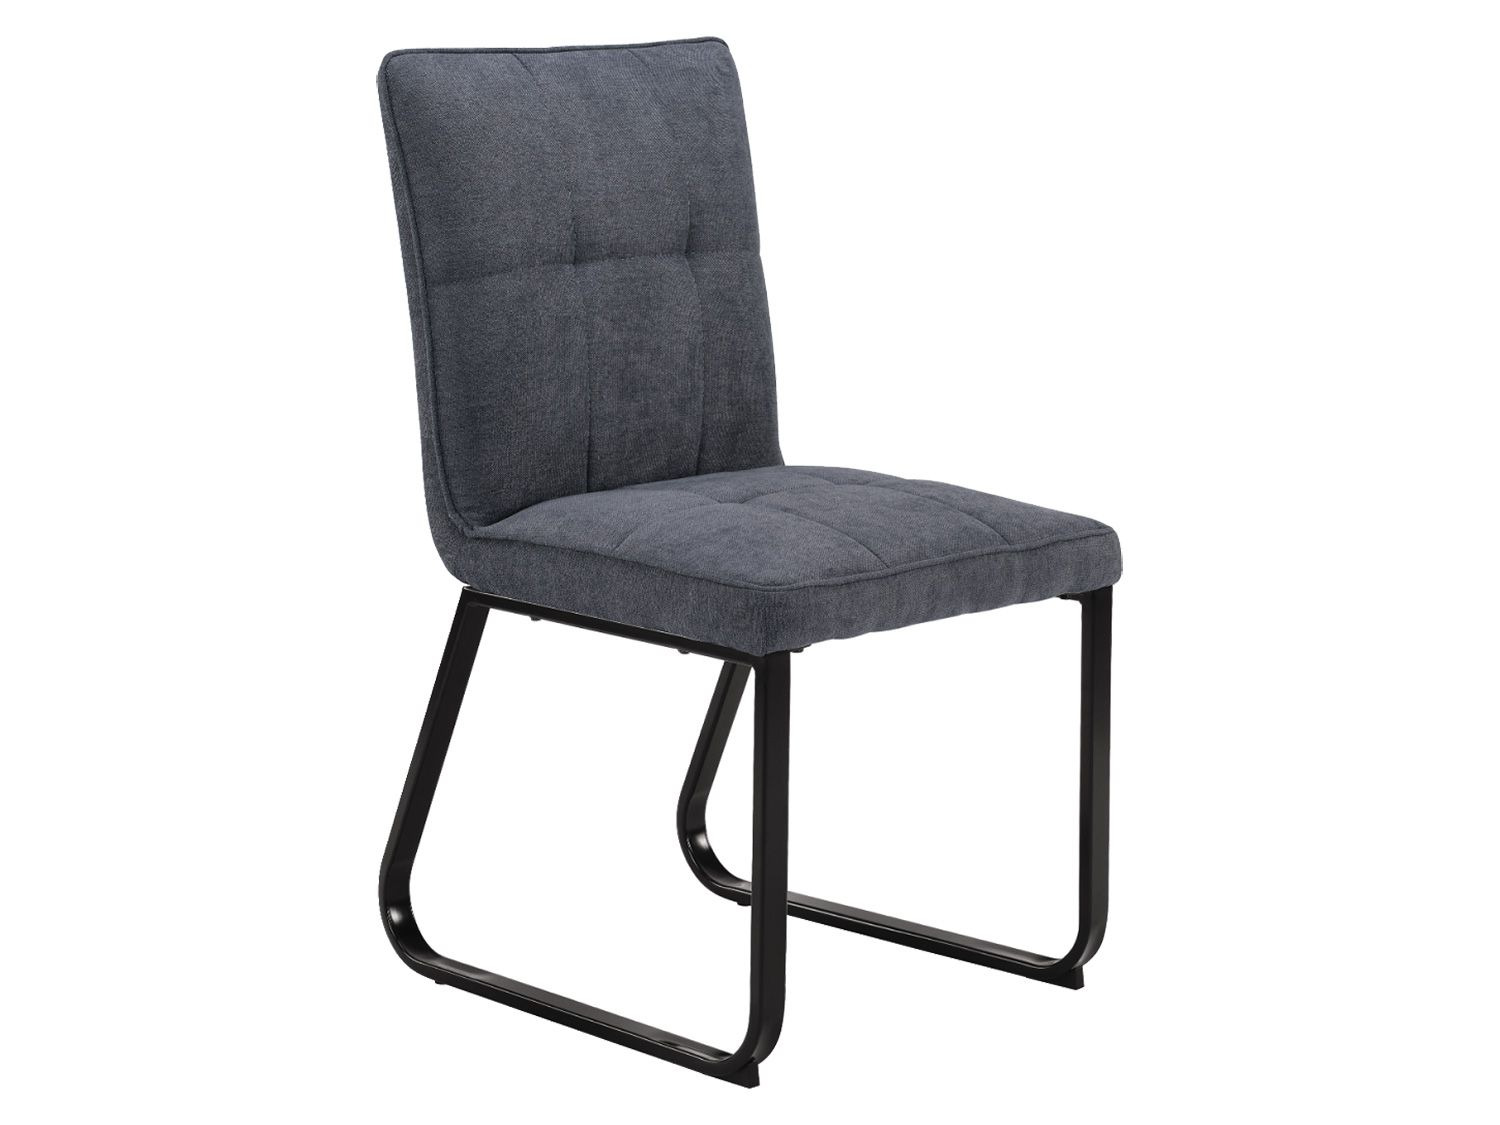 LIDL Tilda 2-er Stuhl kaufen Set | Homexperts online